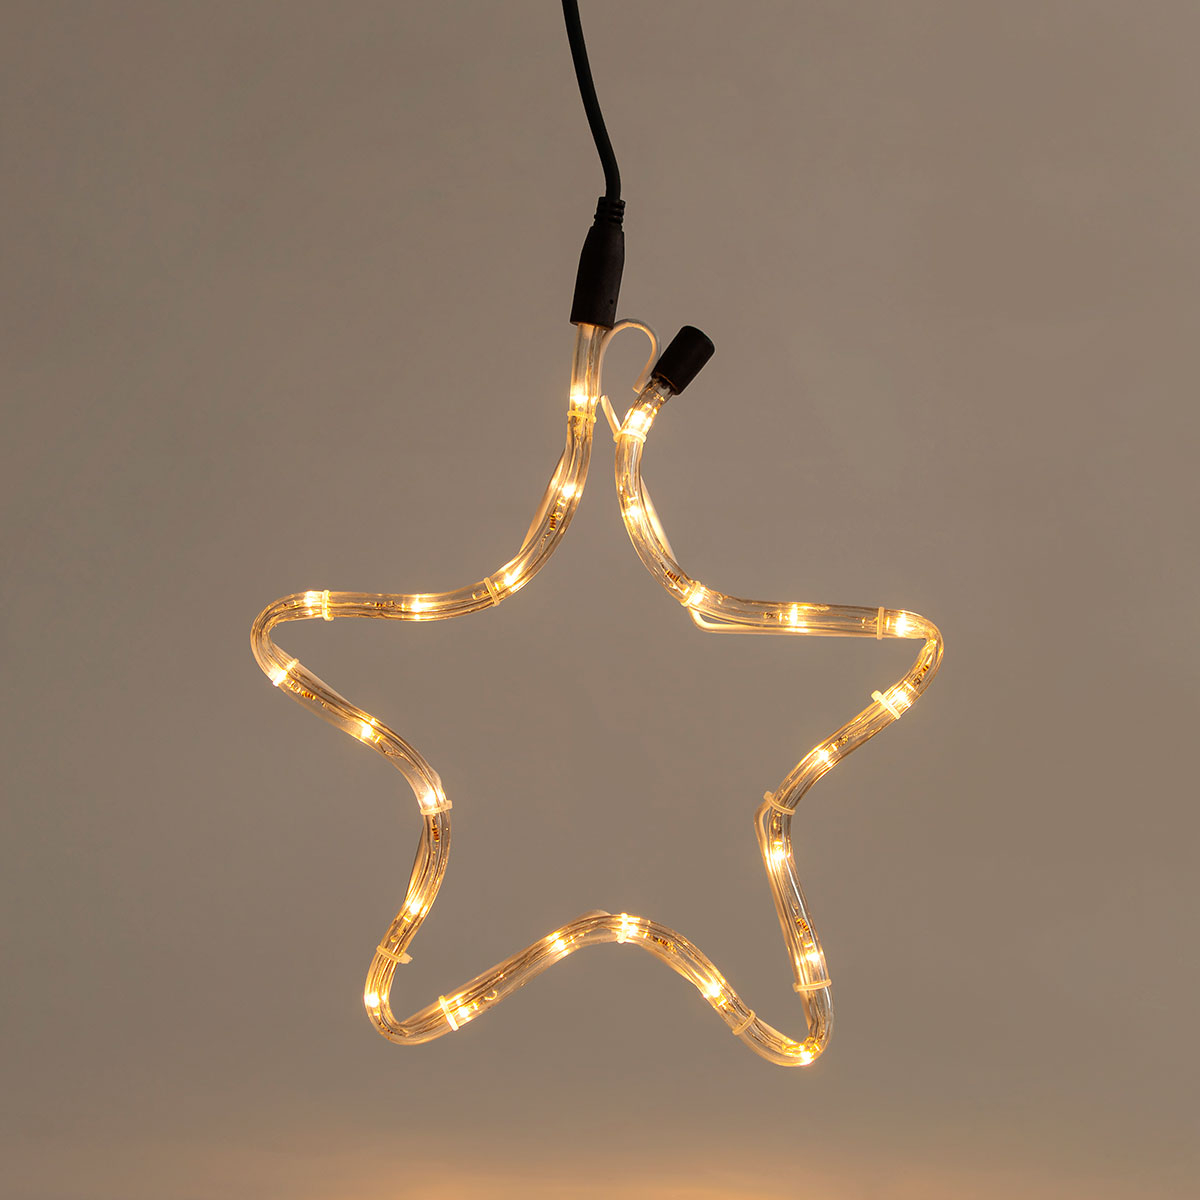 Χριστουγεννιάτικο Αστέρι Φωτοσωλήνας Με 24 Led Φωτάκια (29×32) Eurolamp 600-20003